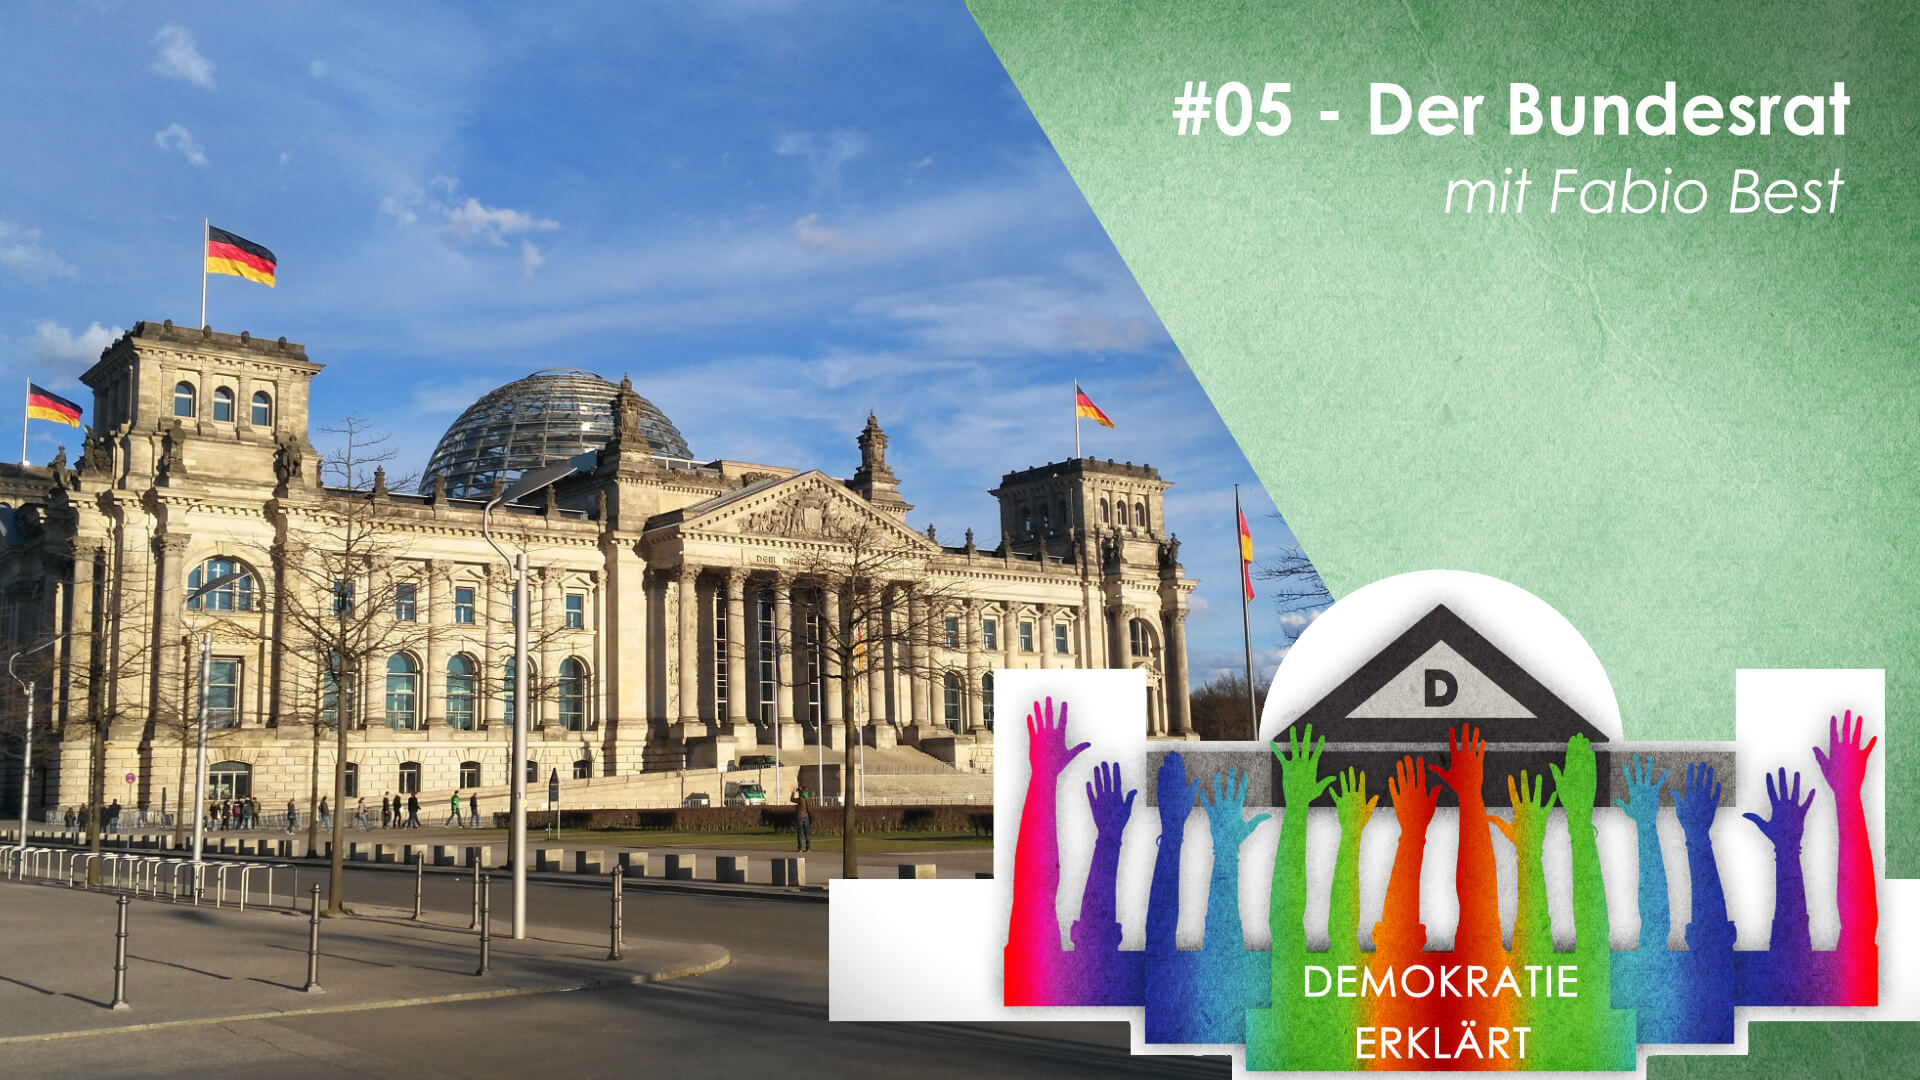 Man sieht den Bundestag von schräg vorne fotografiert - daneben das Logo von Demokratie erklärt mit vielen bunten Armen die wie Säulen ein Dach zu halten scheinen - darüber der Titel der Folge: Demokratie erklärt: #05 - Der Bundesrat mit Fabio Best